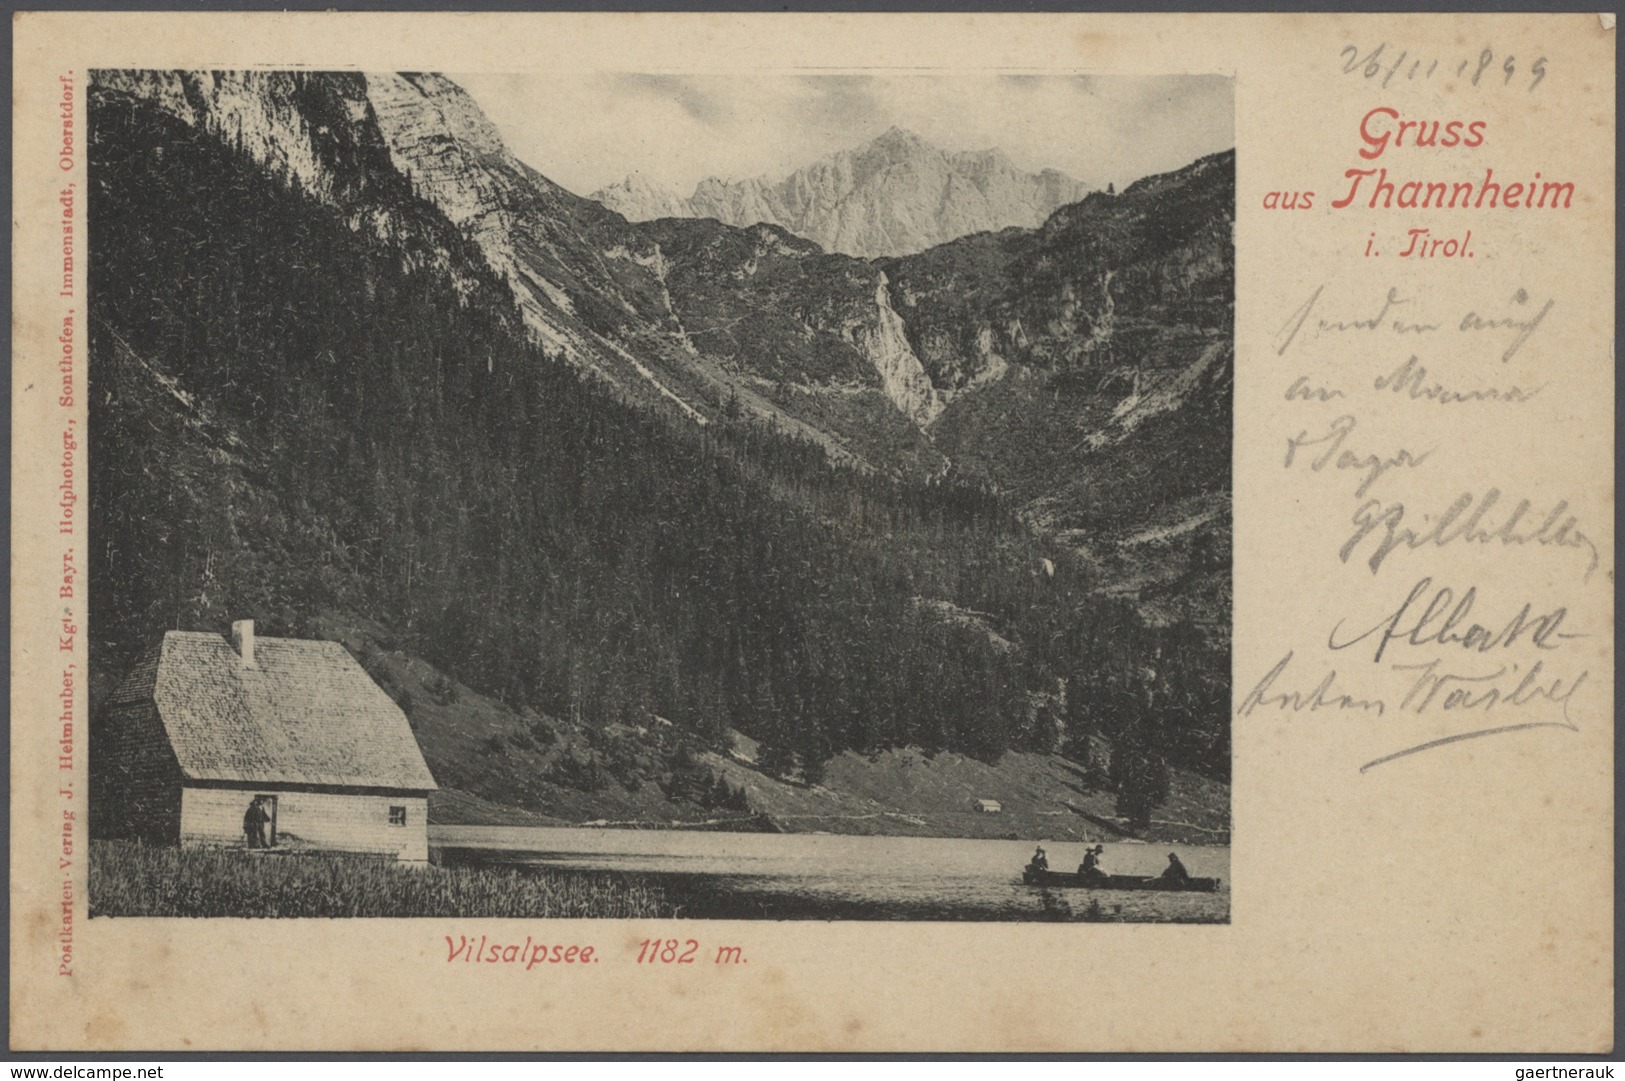 Ansichtskarten: 1895-1905, tolles Album mit 400 gebrauchten AK an eine Adresse, nur topographische K